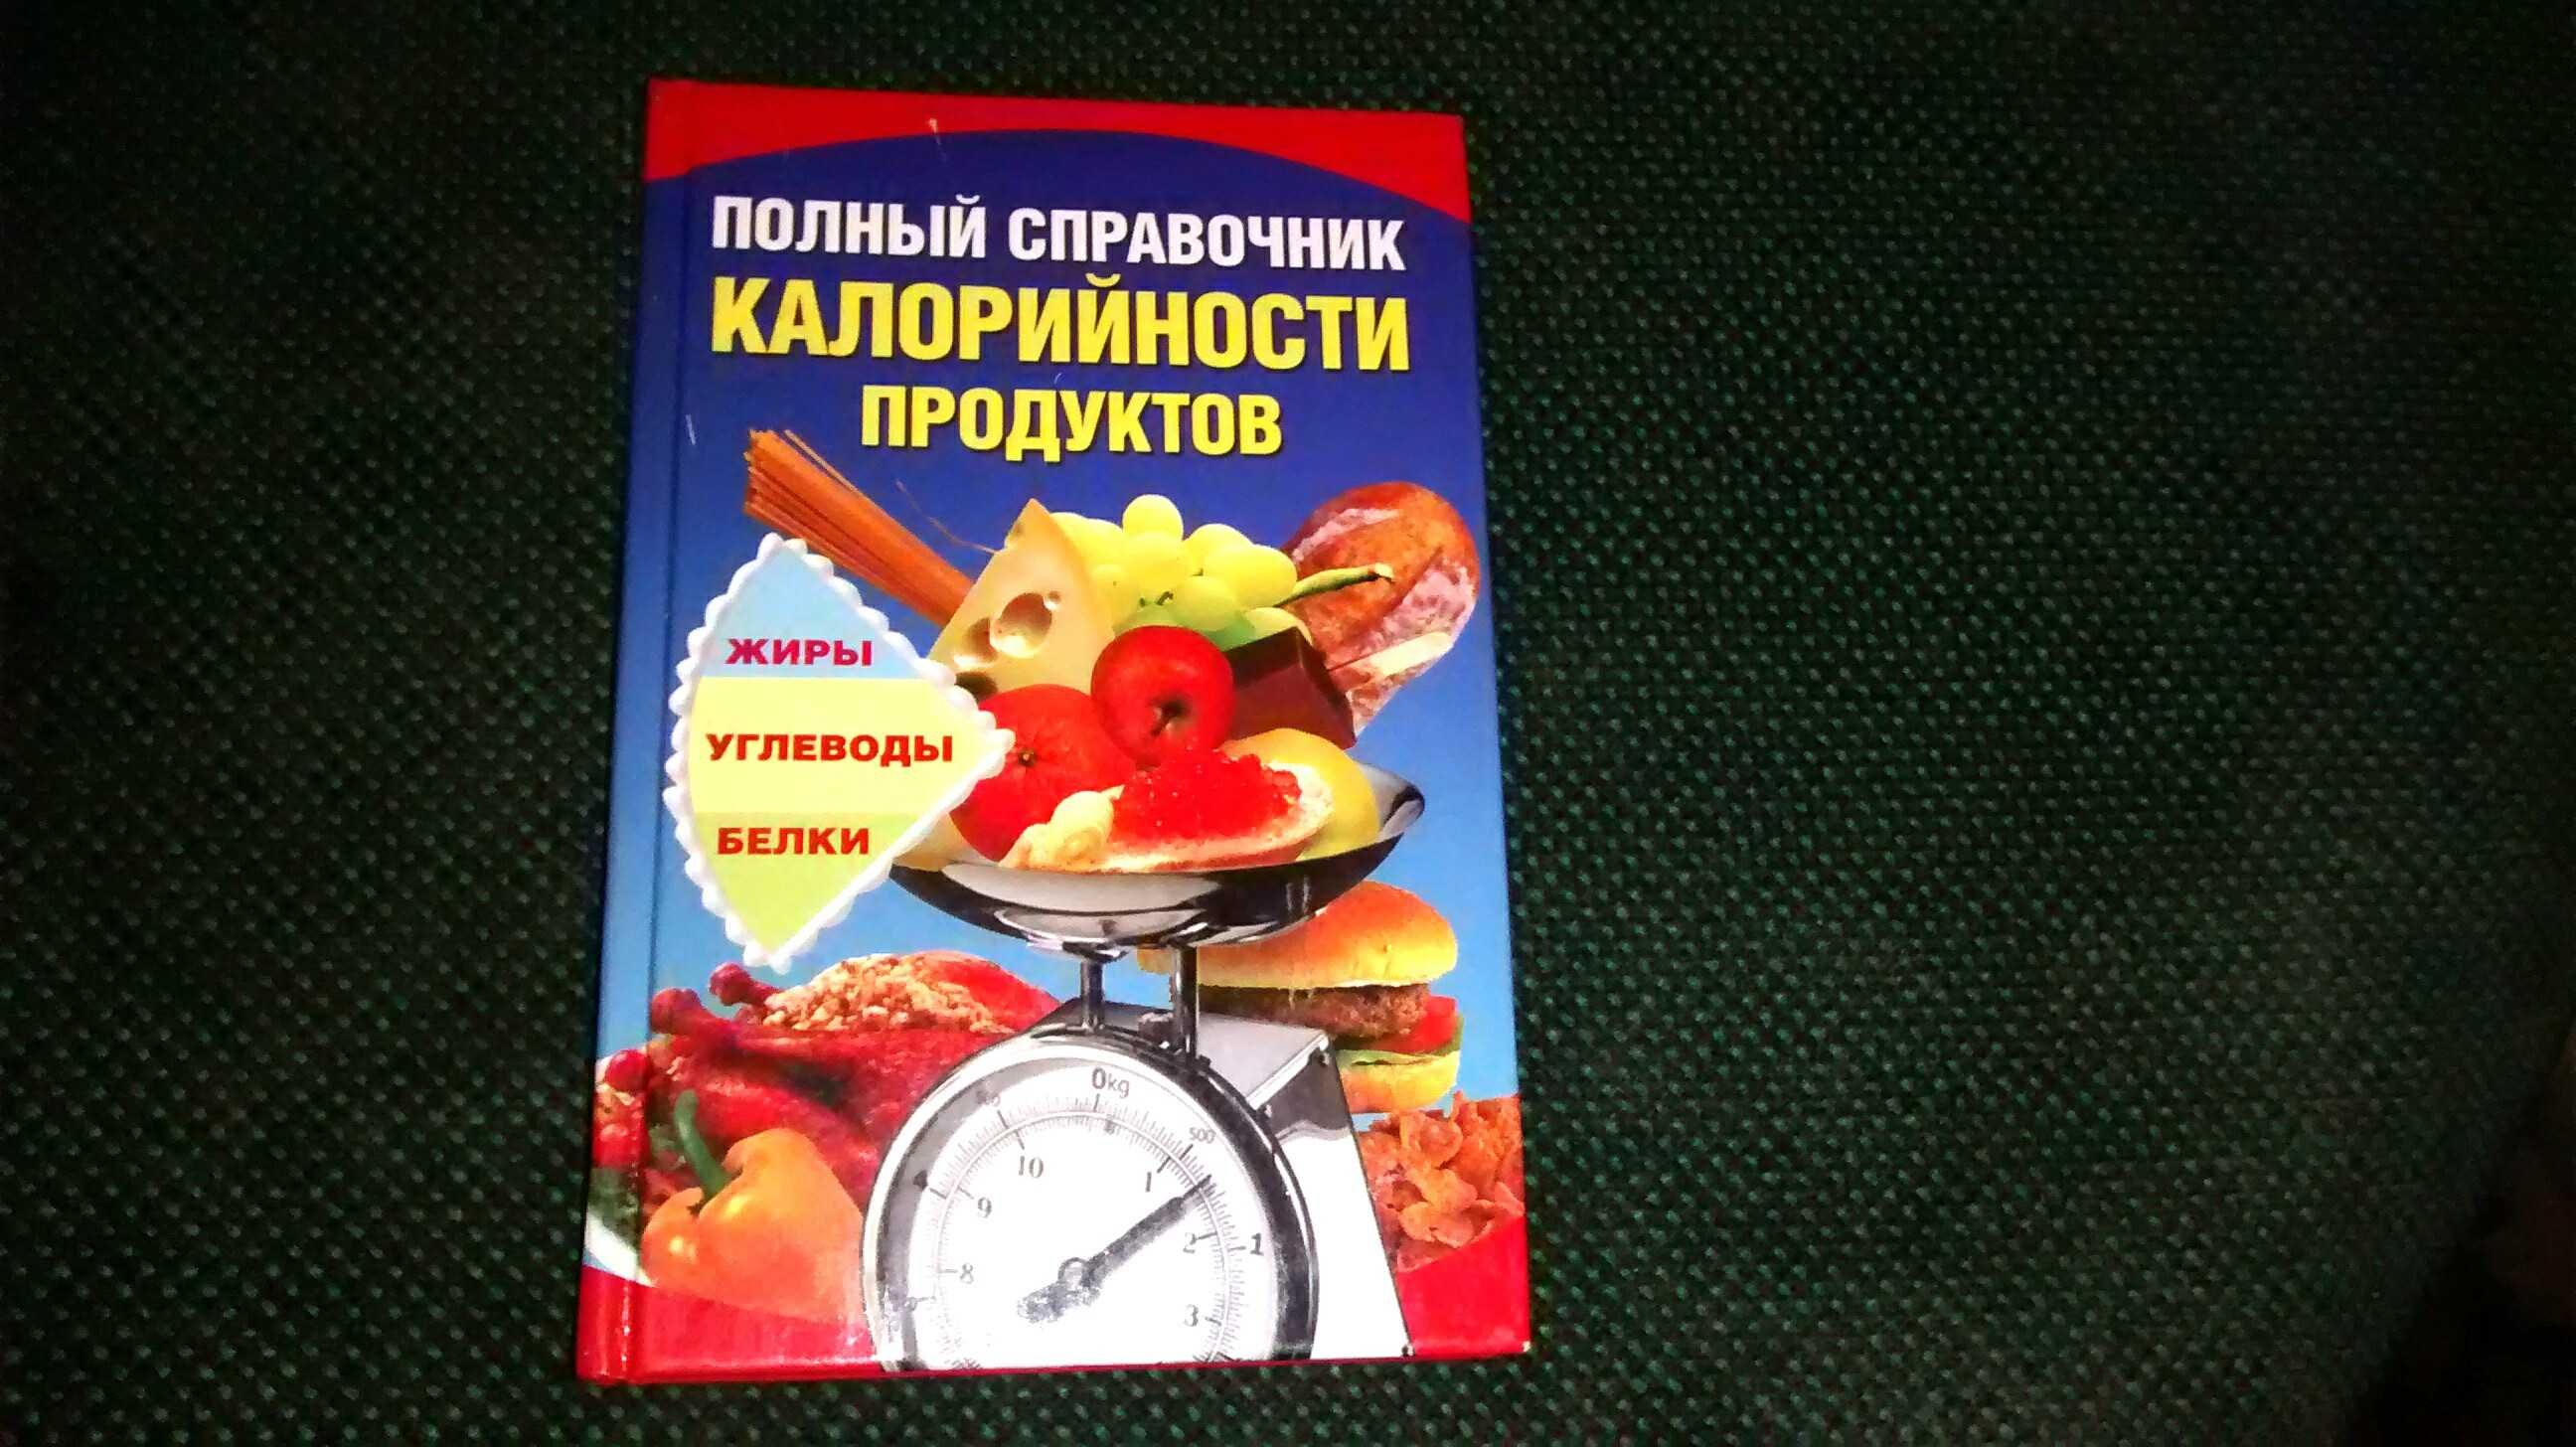 А. Шепелева - "Полный справочник калорийности продуктов"